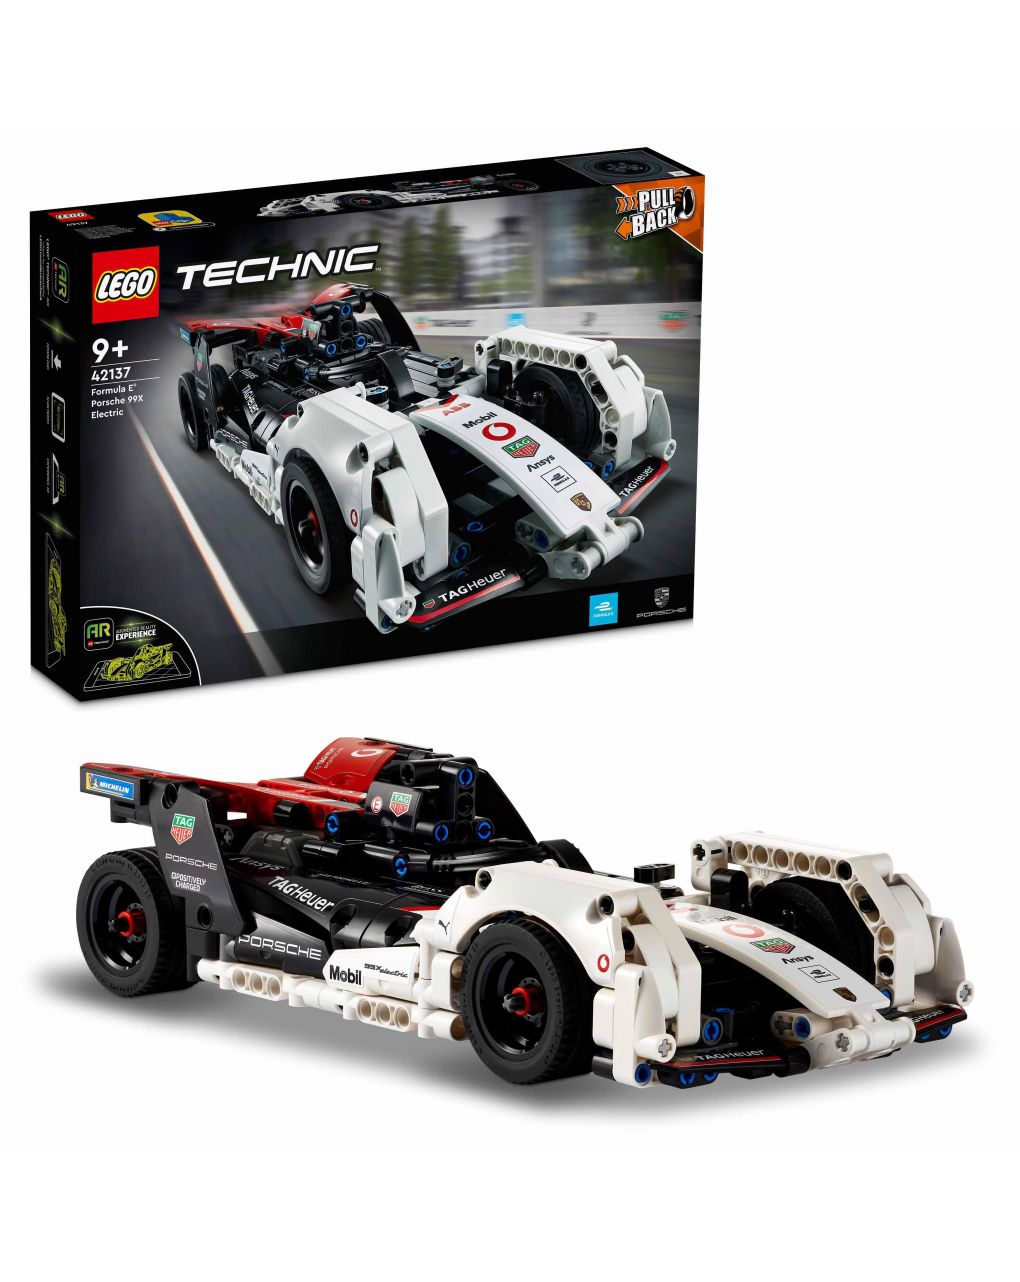 Formula e® porsche 99x electric 42137 - lego technic - LEGO